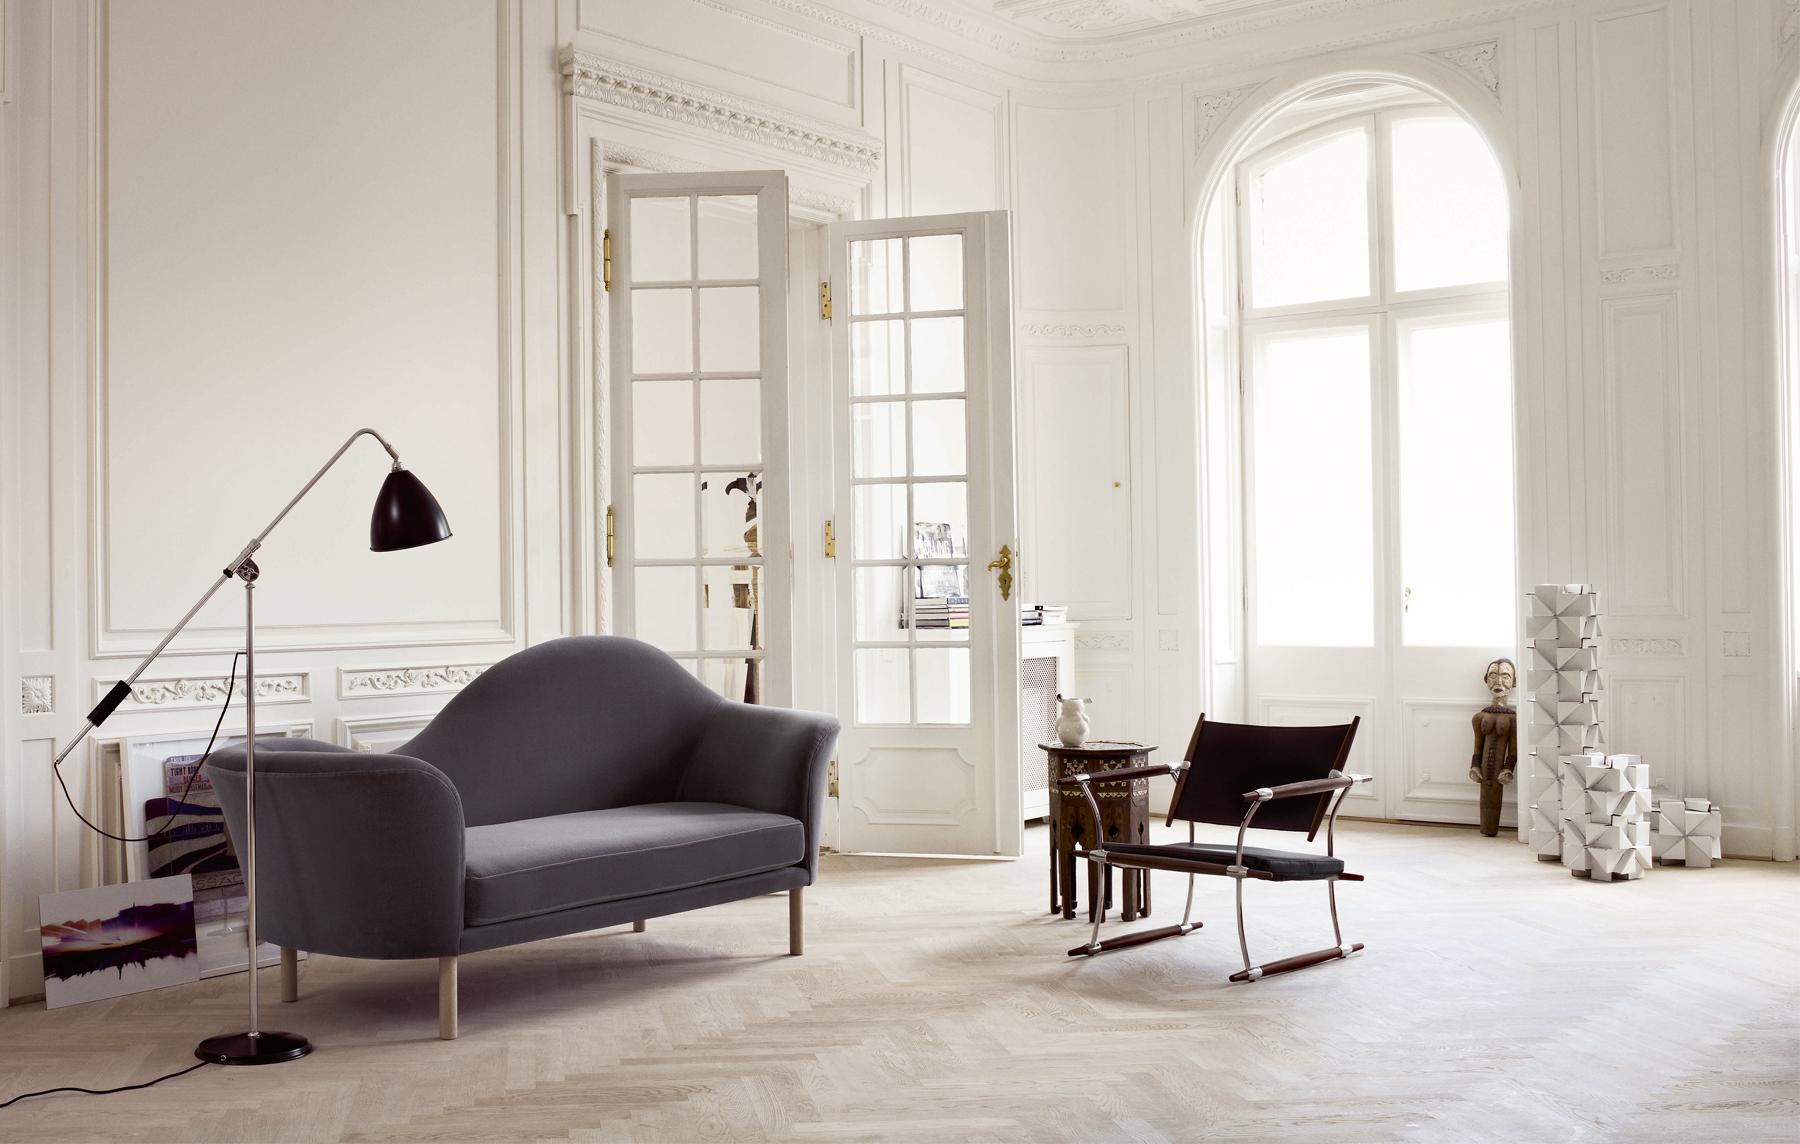 Designer-Couch und Ledersessel im modernen Wohnzimmer #puristisch #minimalistisch ©Gubi